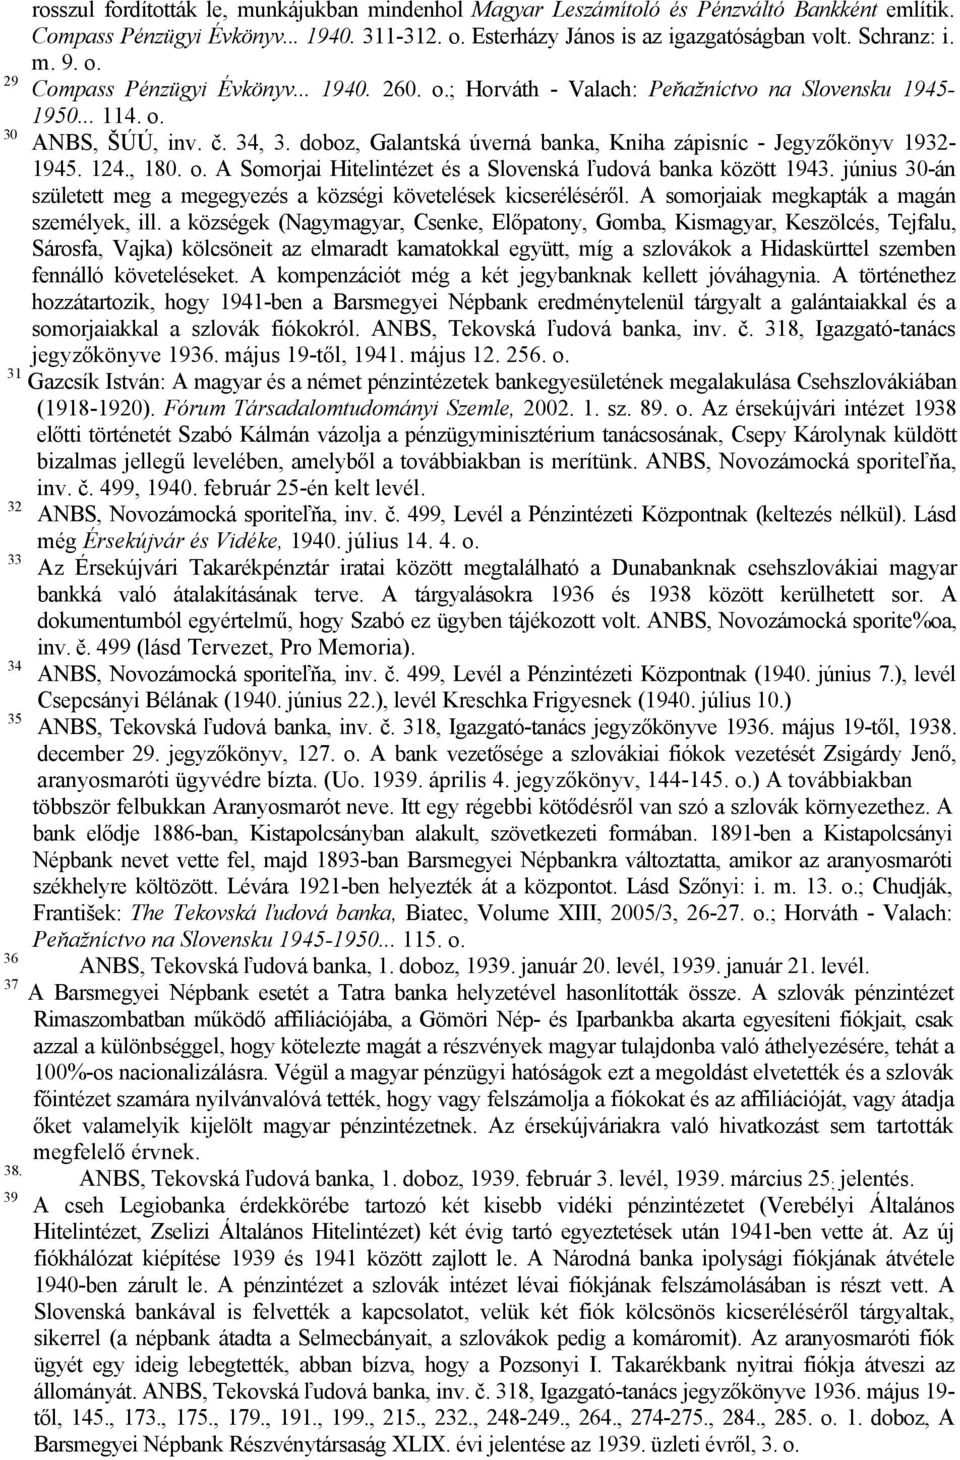 doboz, Galantská úverná banka, Kniha zápisníc - Jegyzőkönyv 1932-1945. 124., 180. o. A Somorjai Hitelintézet és a Slovenská ľudová banka között 1943.